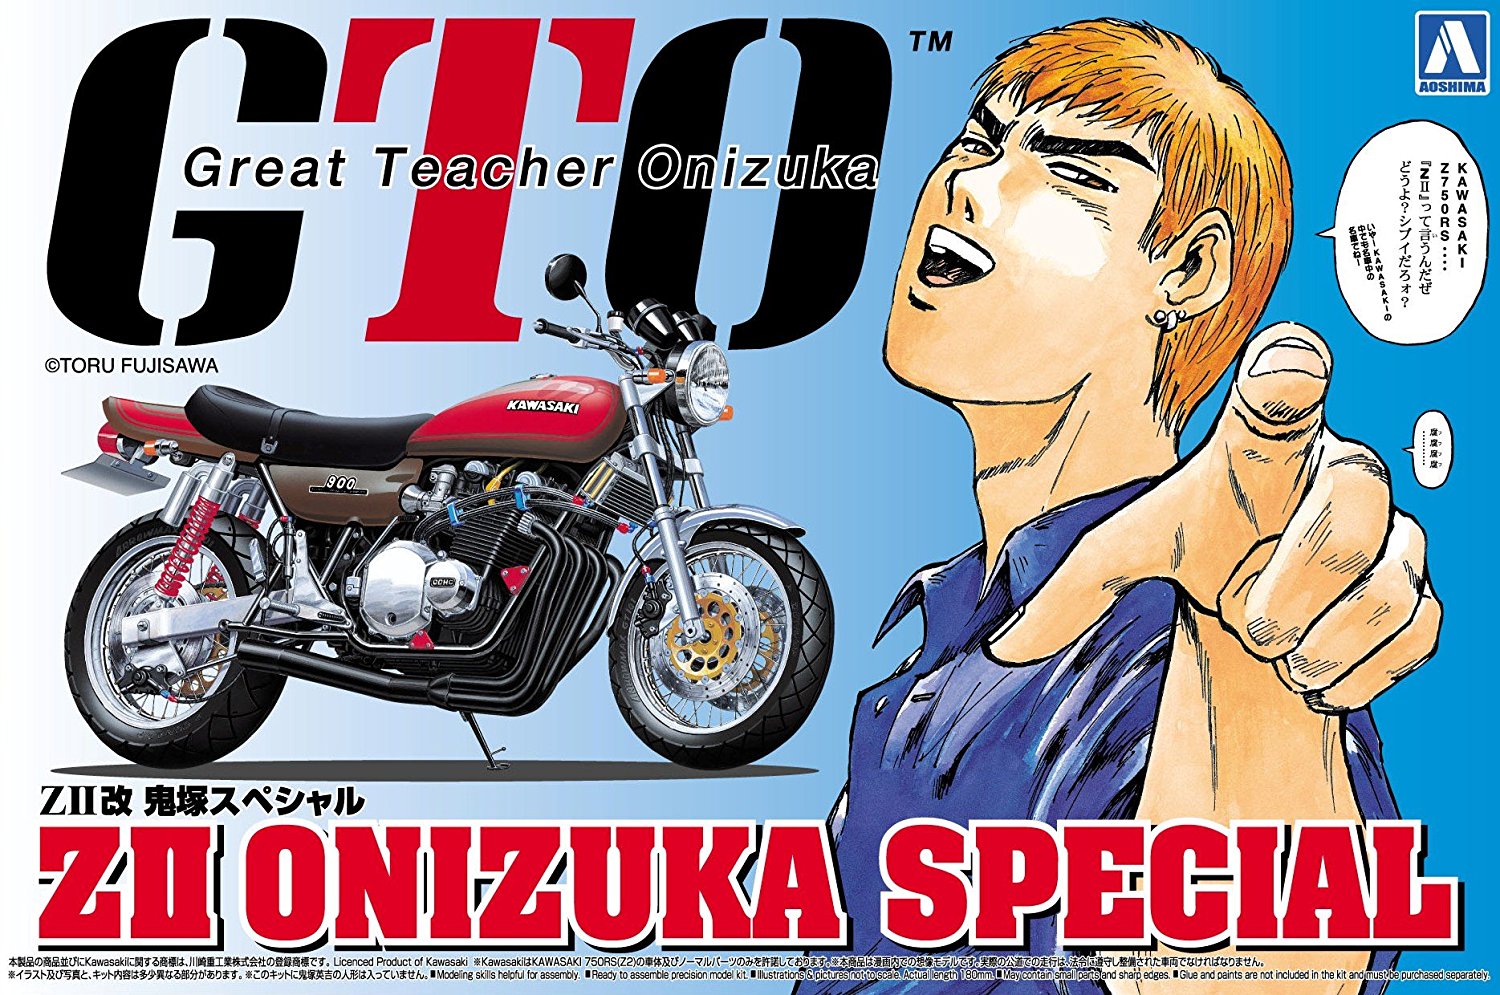 ZII Custom Onizuka Special